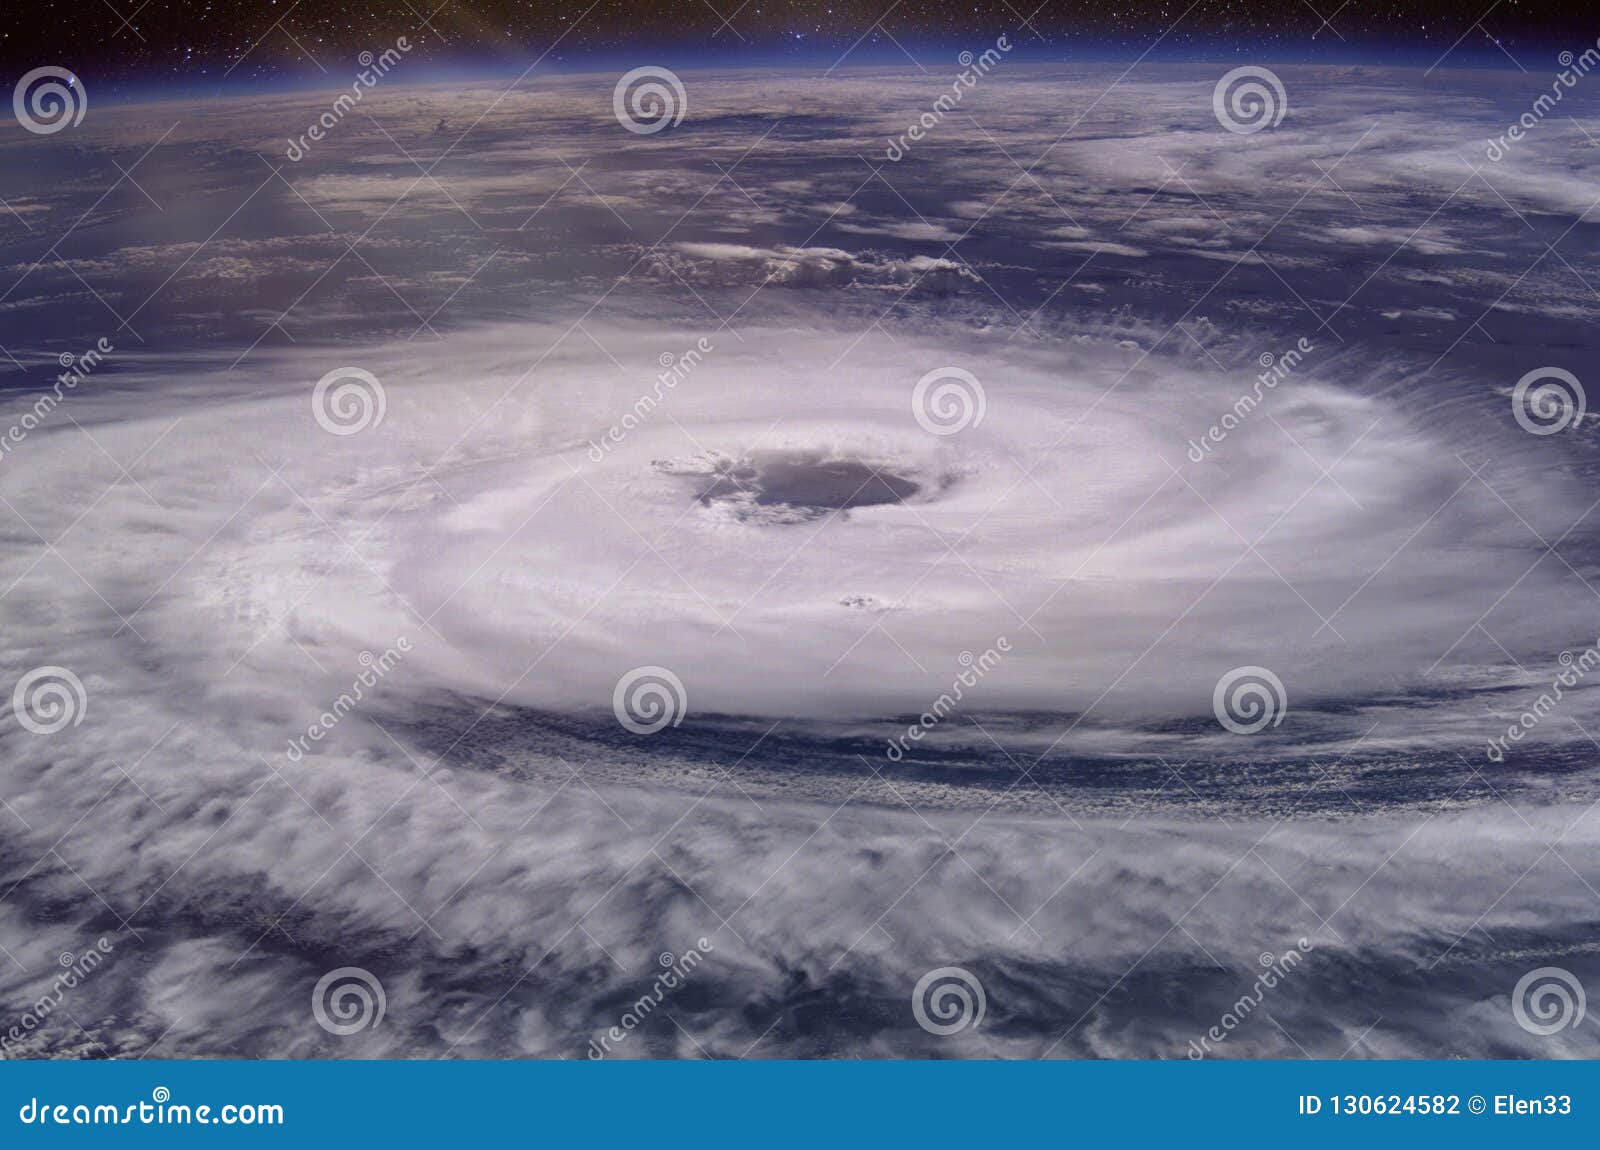 恐怖的飓风狂风壁纸图片--壁纸高清